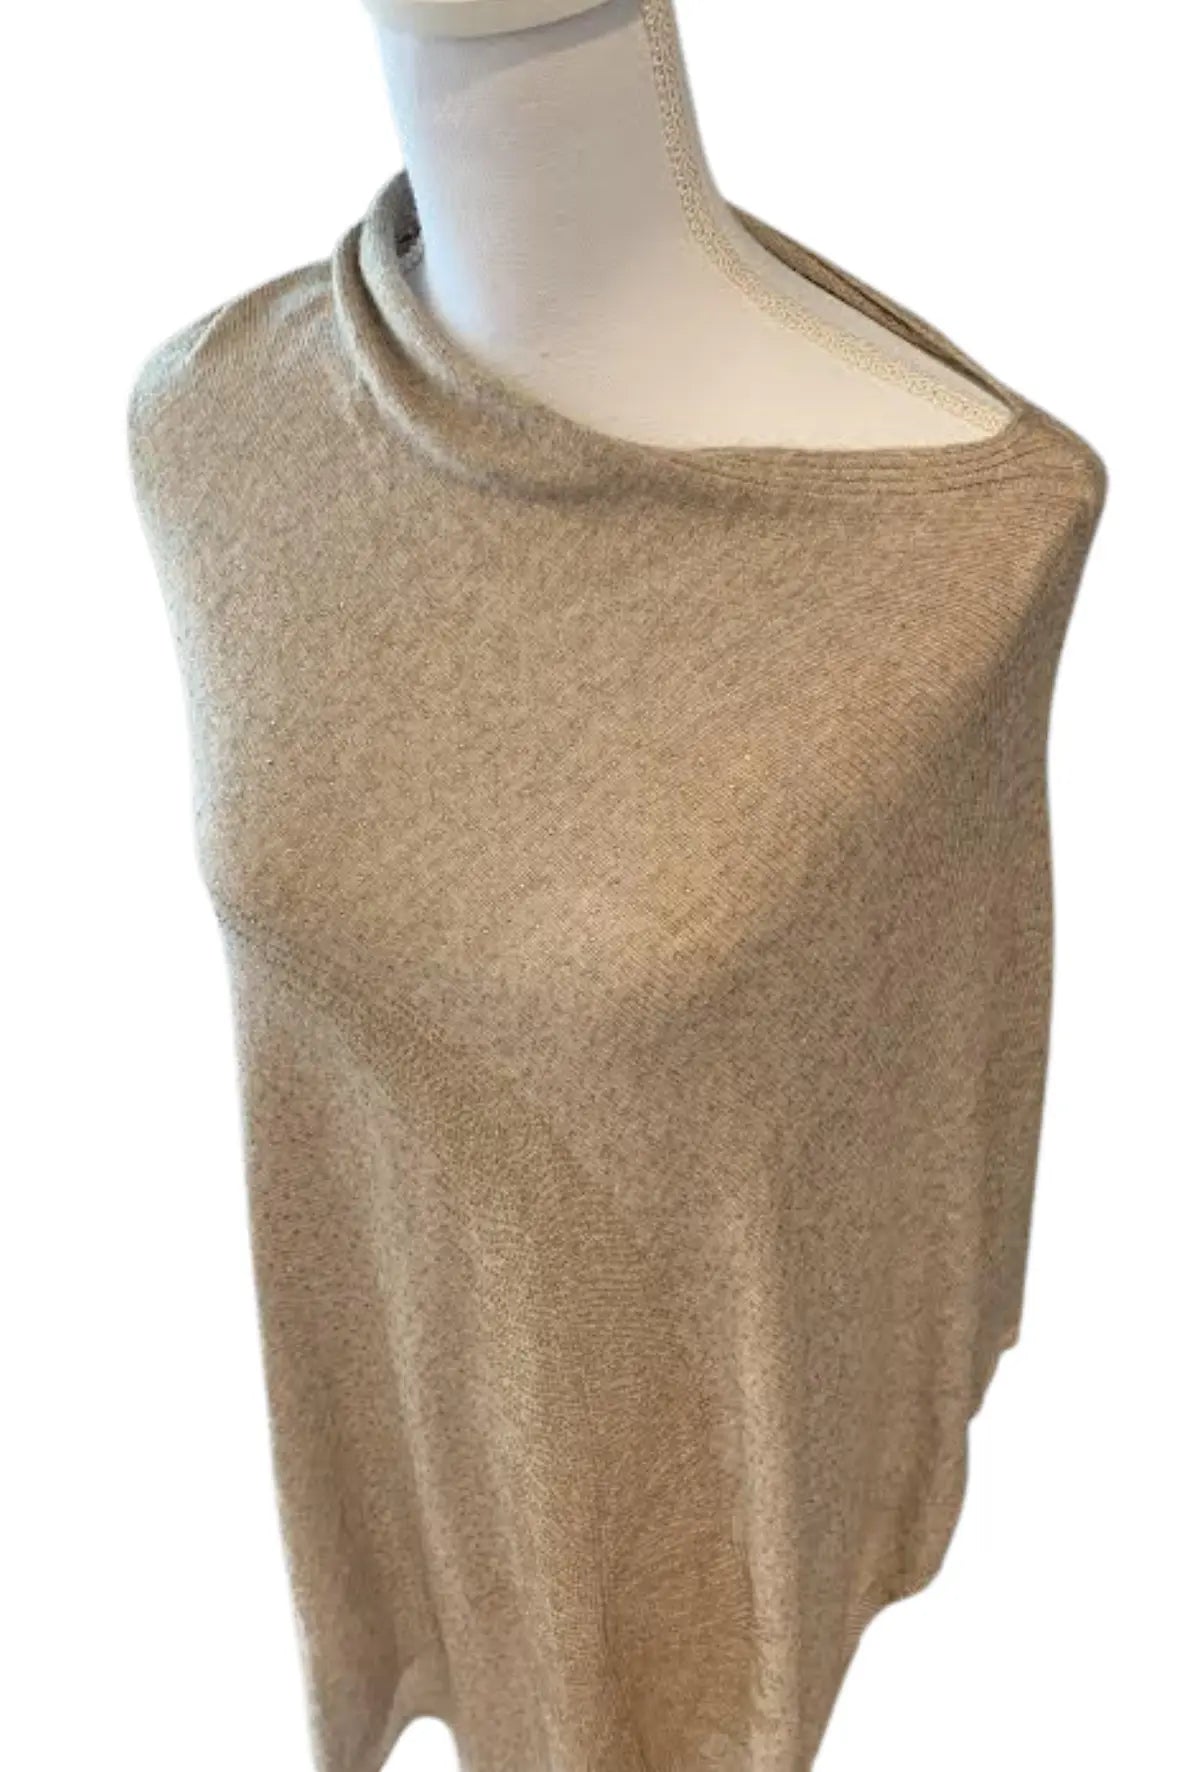 Swarovski Embellished Cashmere Sweater Cape